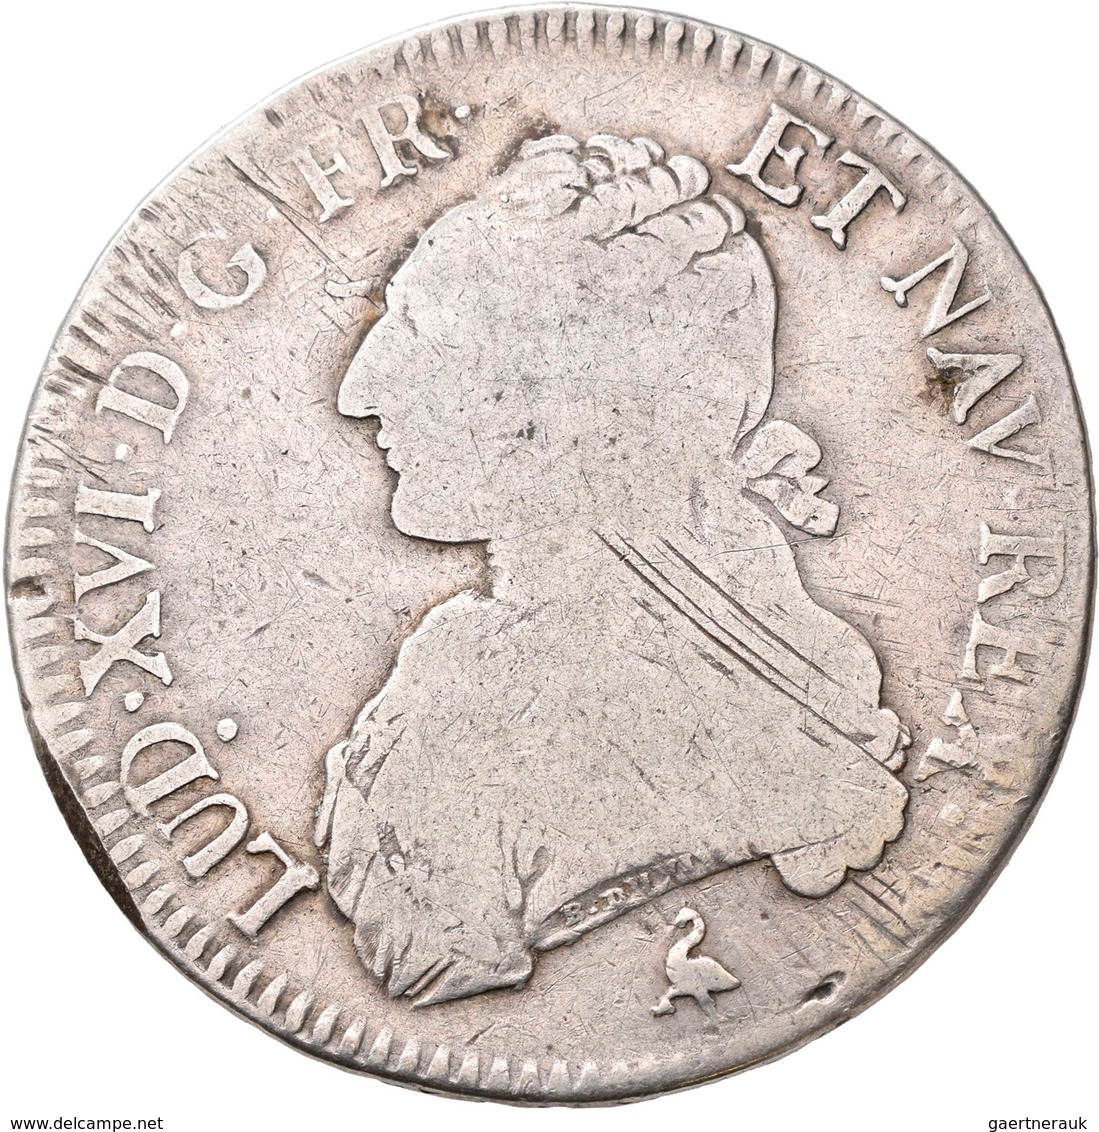 Frankreich: Louis XV. 1715-1774: Lot 3 x ECU 1726 A, 1726 D, 1762 BB; dazu Louis XVI. 1774-1792: Ecu